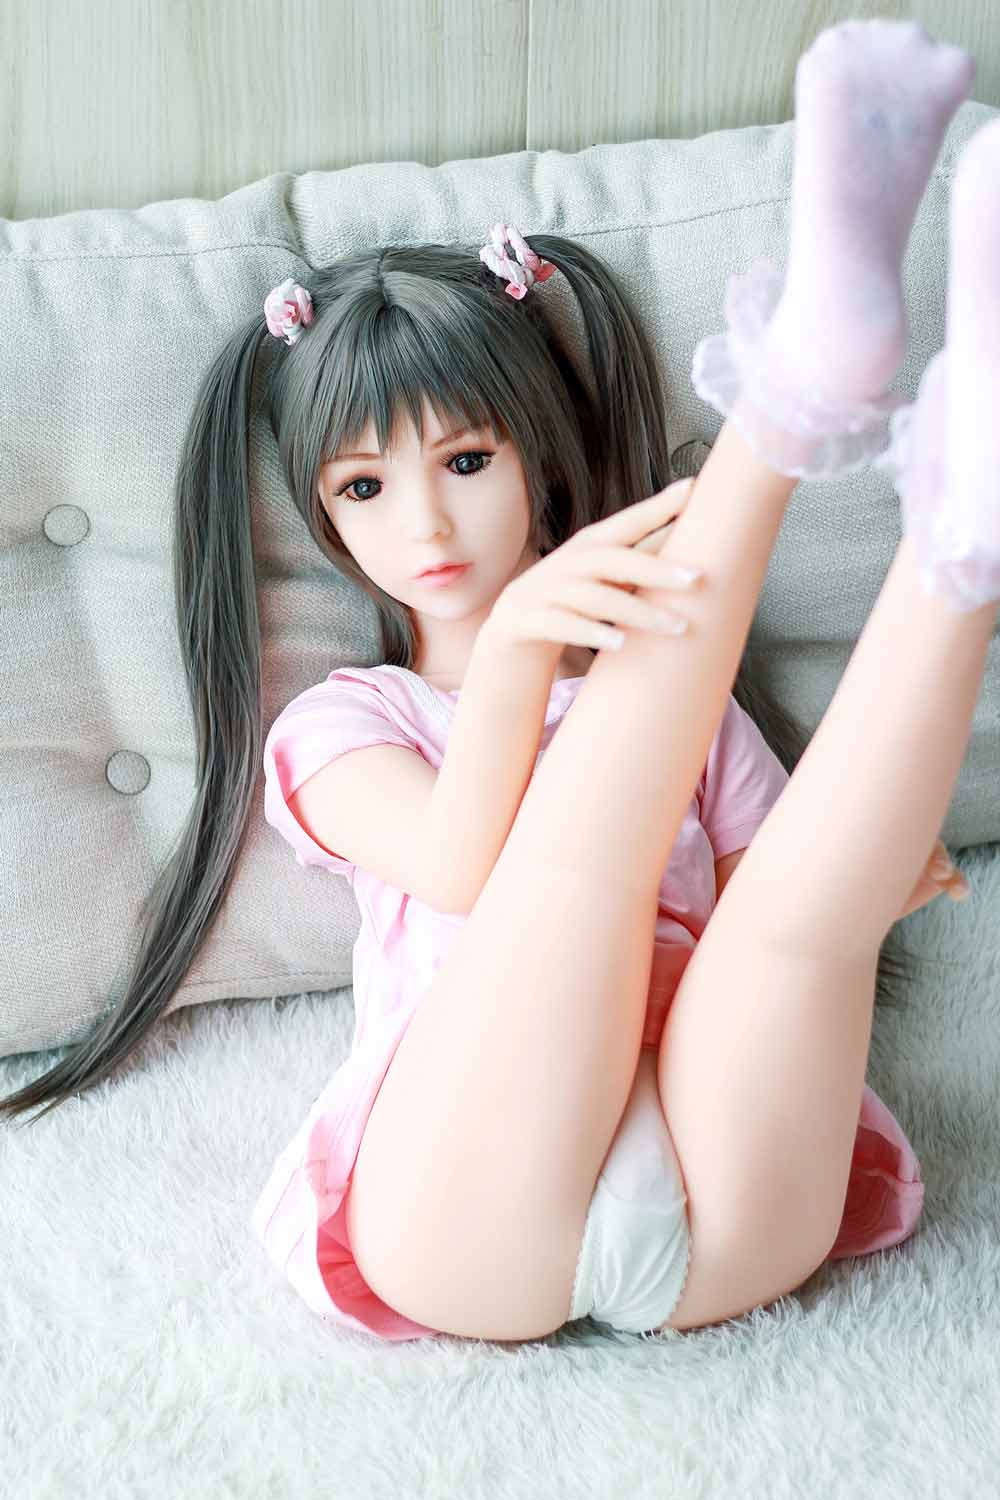 Mini sex doll with legs raised